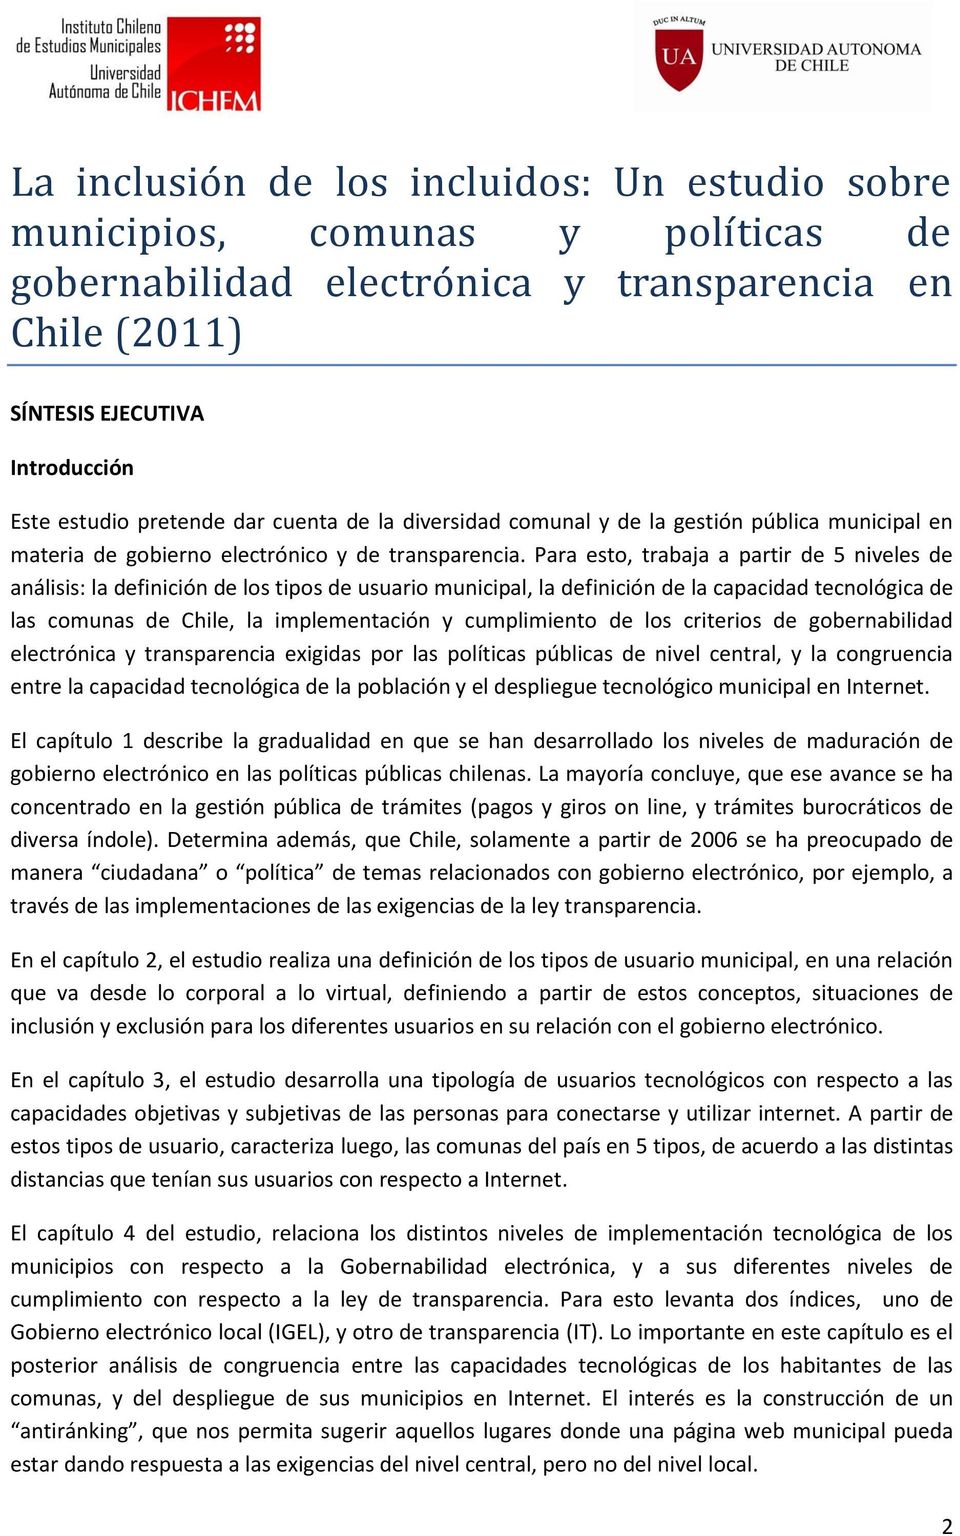 Para esto, trabaja a partir de 5 niveles de análisis: la definición de los tipos de usuario municipal, la definición de la capacidad tecnológica de las comunas de Chile, la implementación y